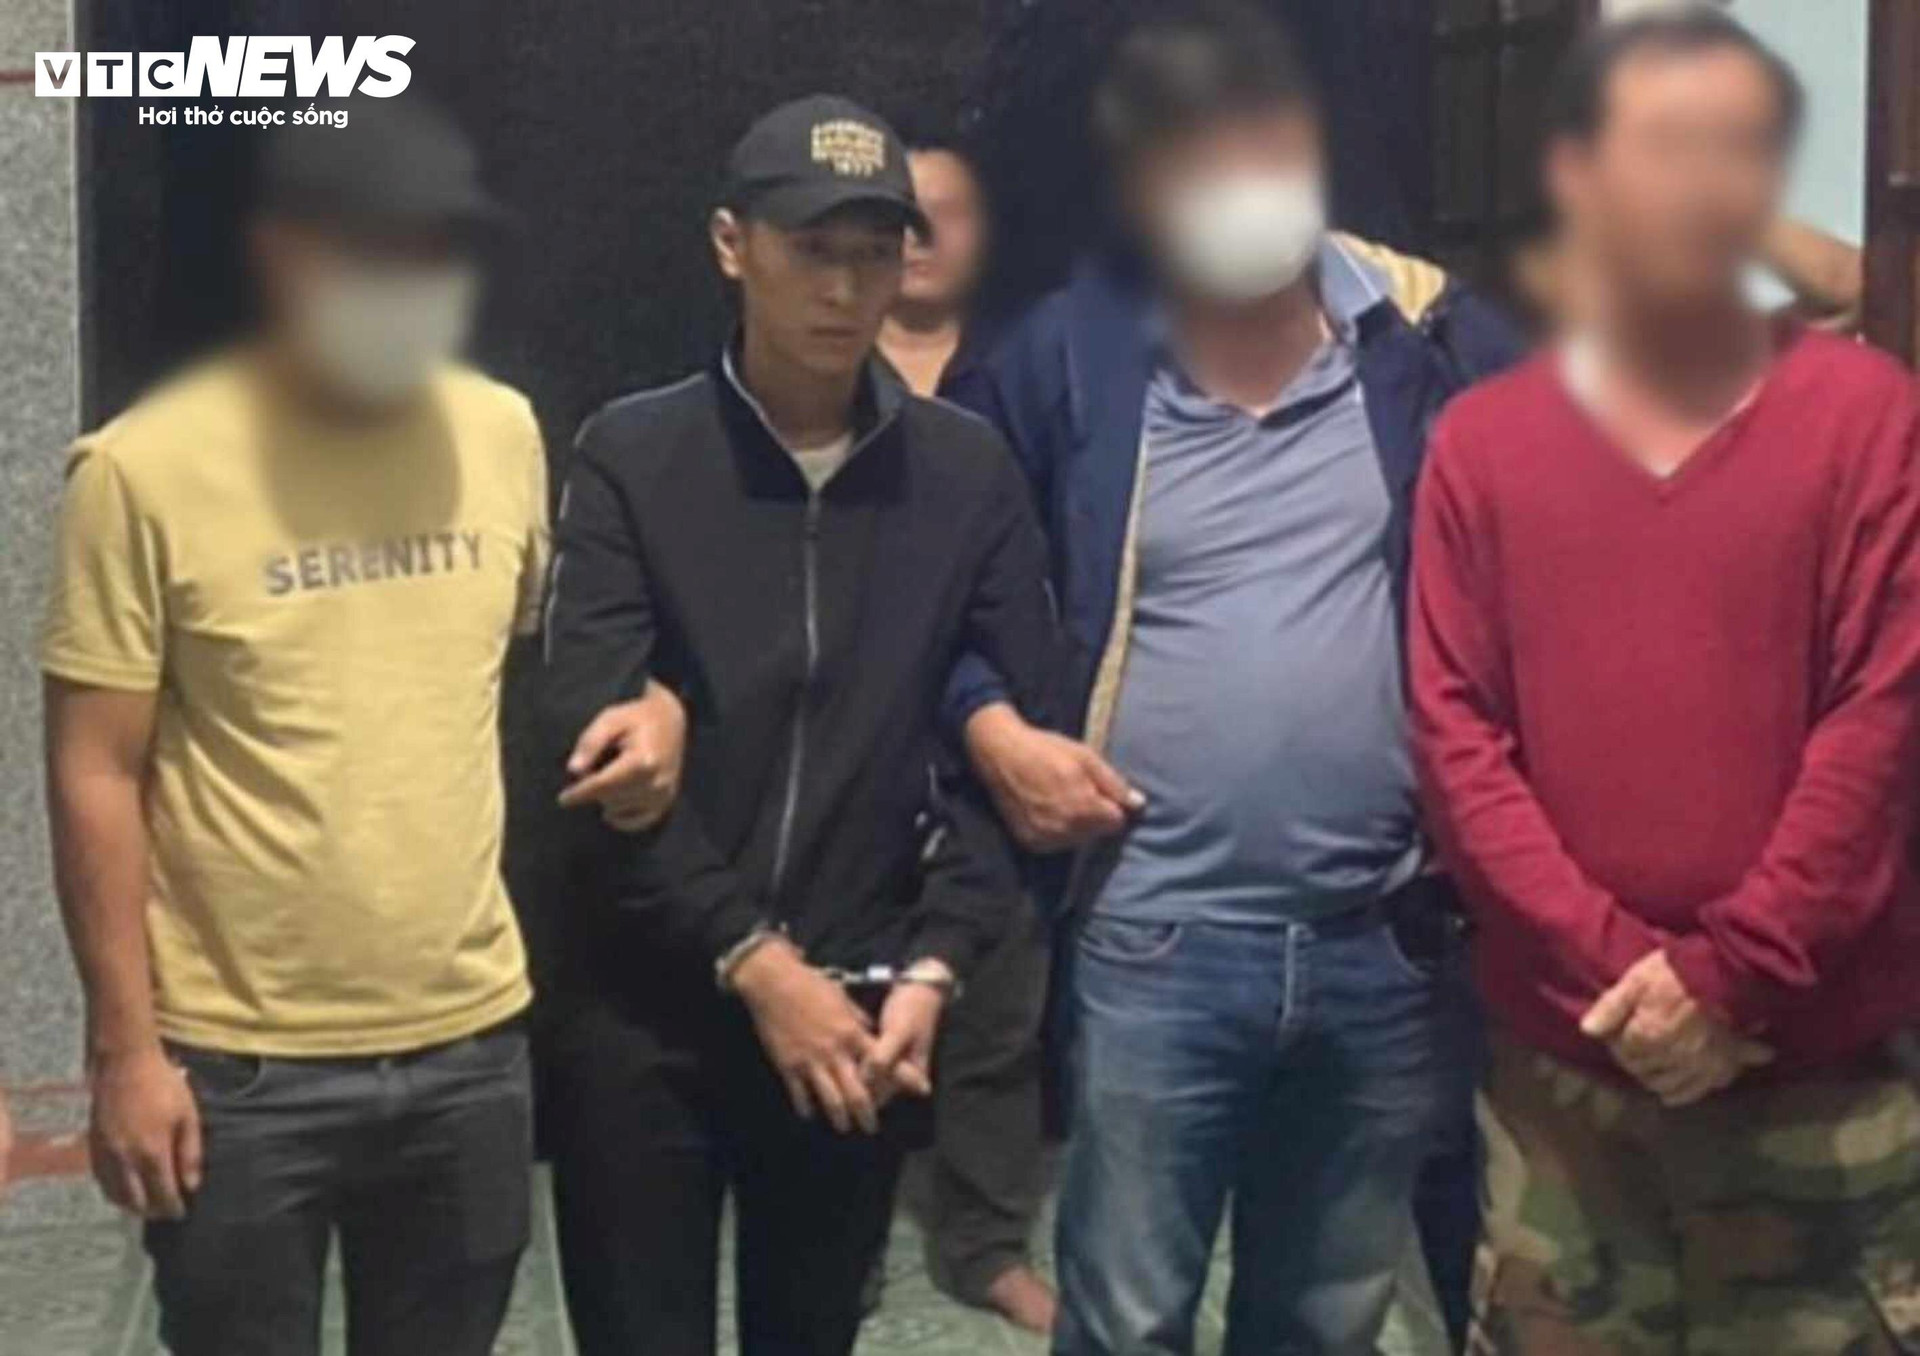 Truy xét ô tô và số điện thoại ghi trên kiện hàng, lực lượng liên ngành bắt giữ được Nguyễn Quang Linh (đội mũ, áo đen).